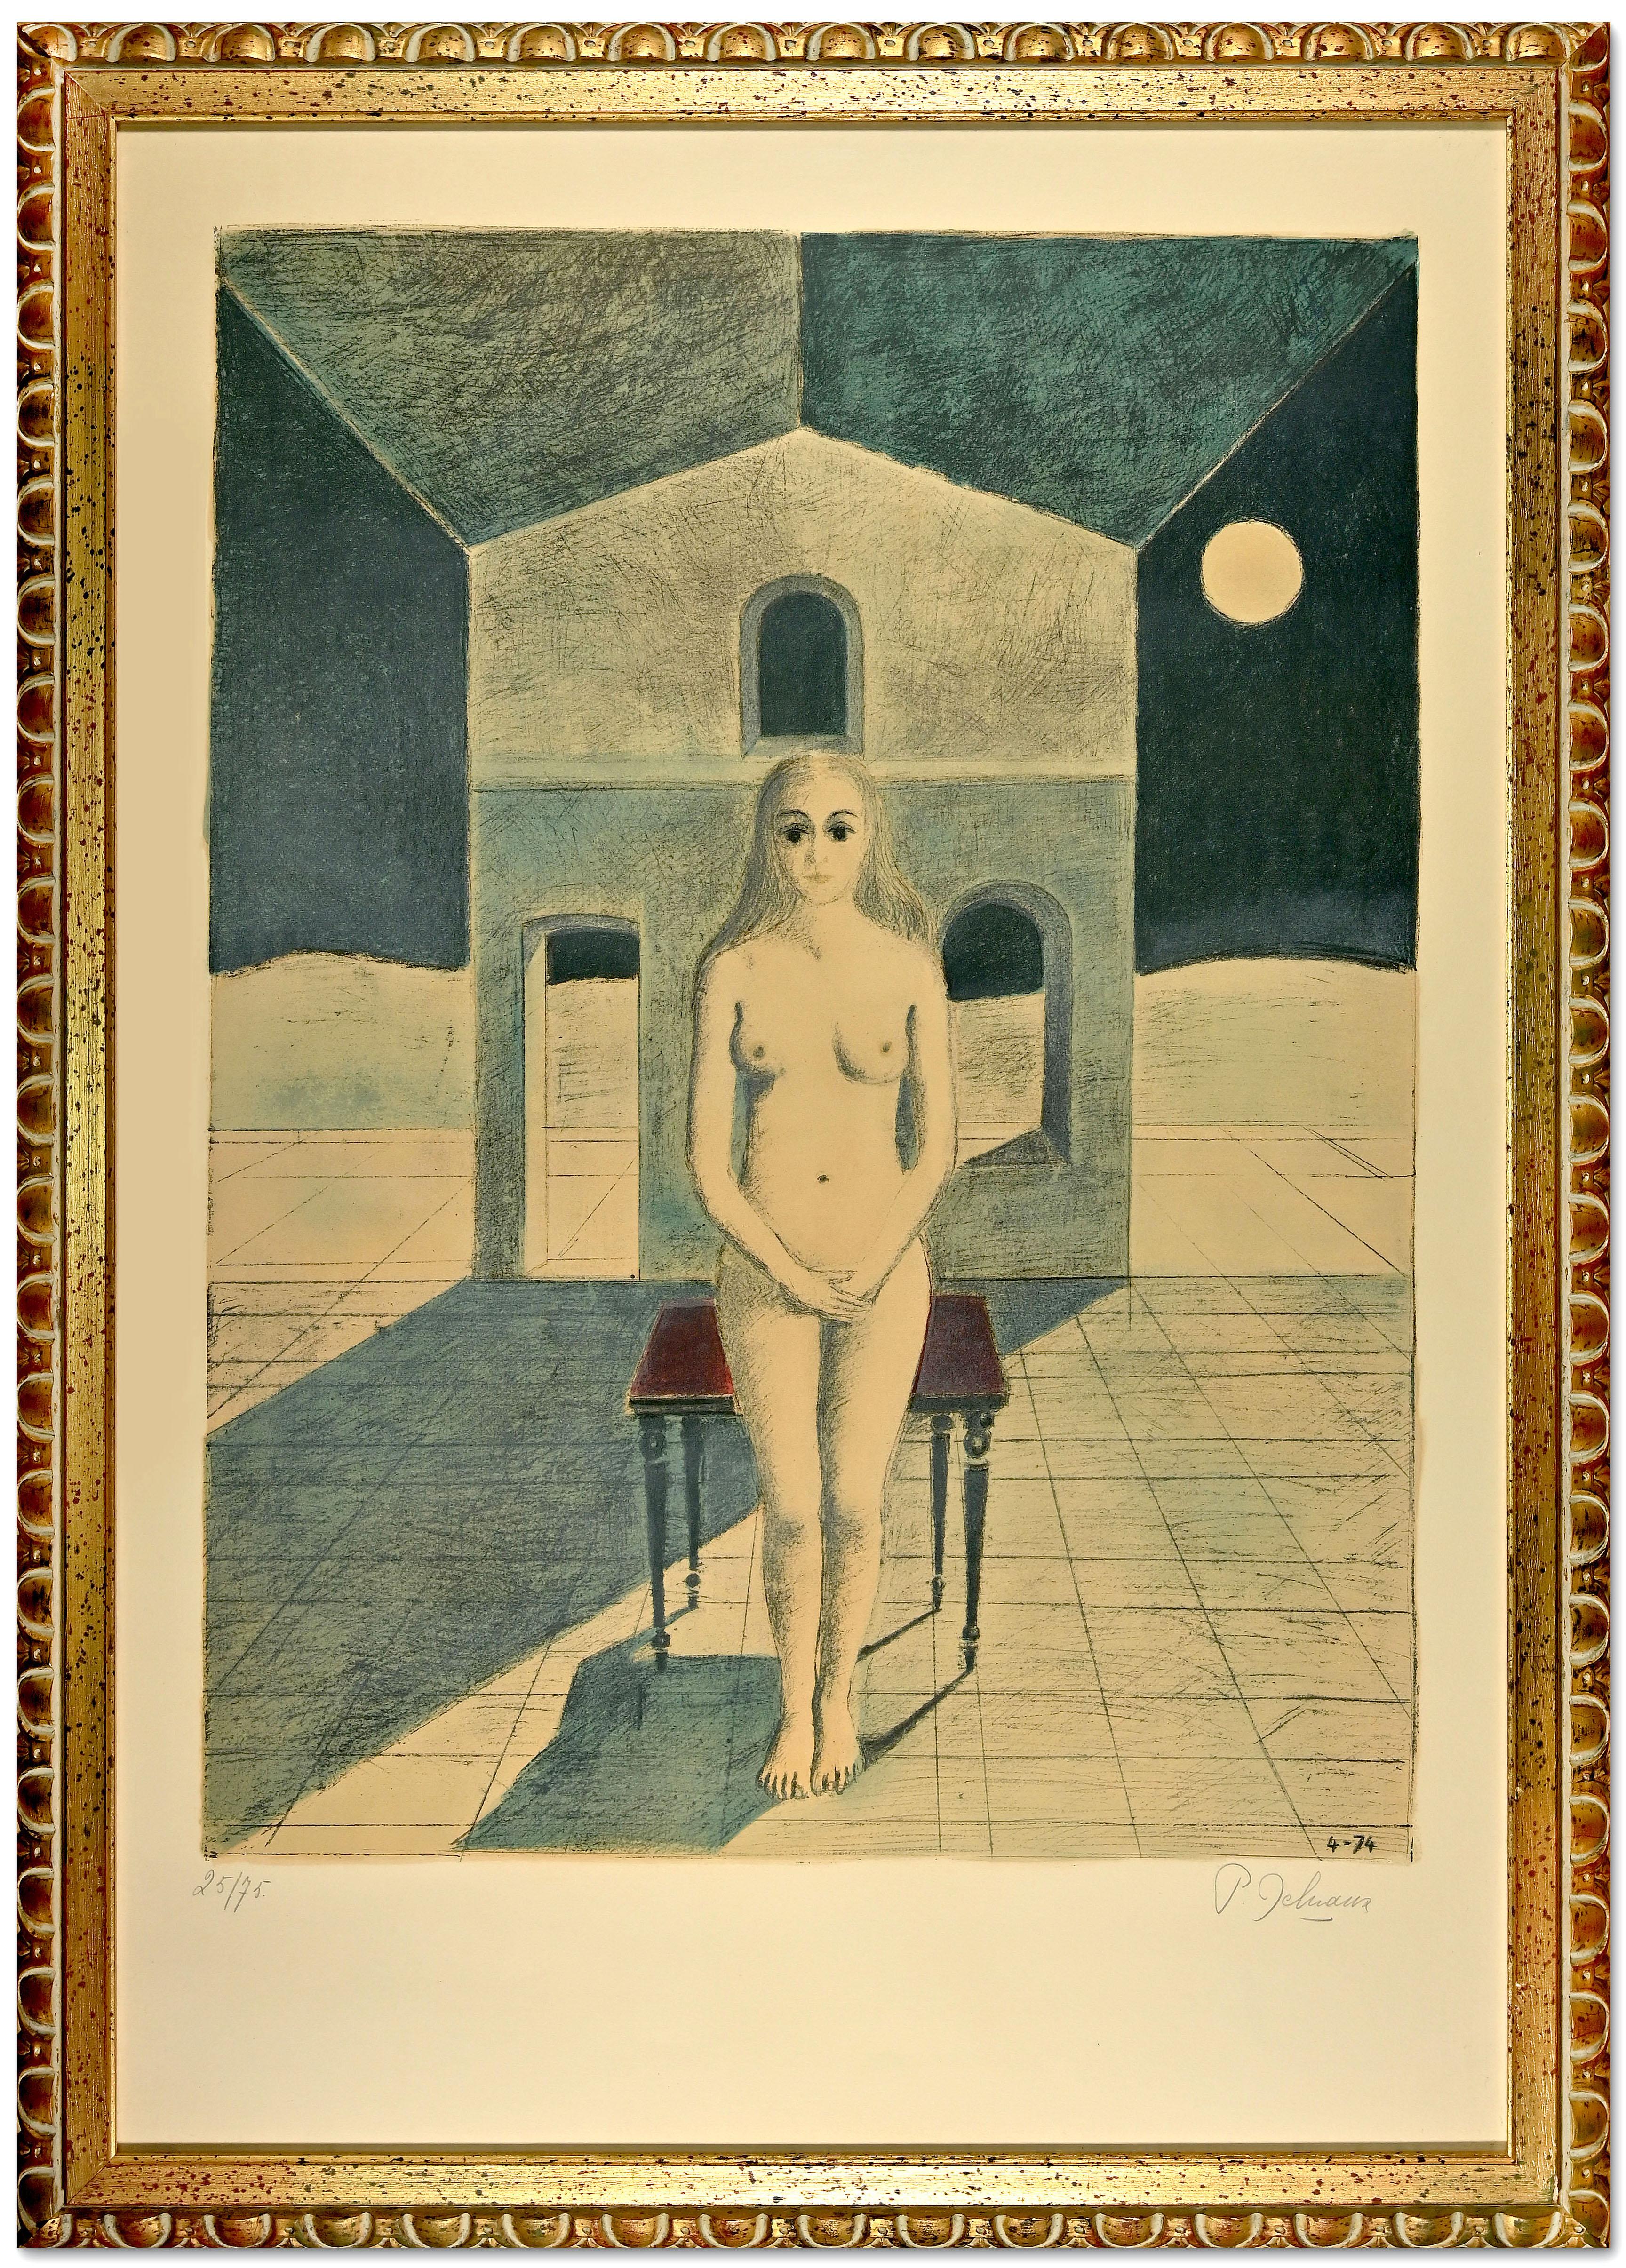  La Voyante ist ein originelles zeitgenössisches Kunstwerk von Paul Delvaux aus dem Jahr 1974.

Farblithographie auf Arches-Papier.

Handsigniert und nummeriert am unteren Rand, Auflage 25/75. 

Gute Bedingungen.

Inklusive vergoldetem Holzrahmen: